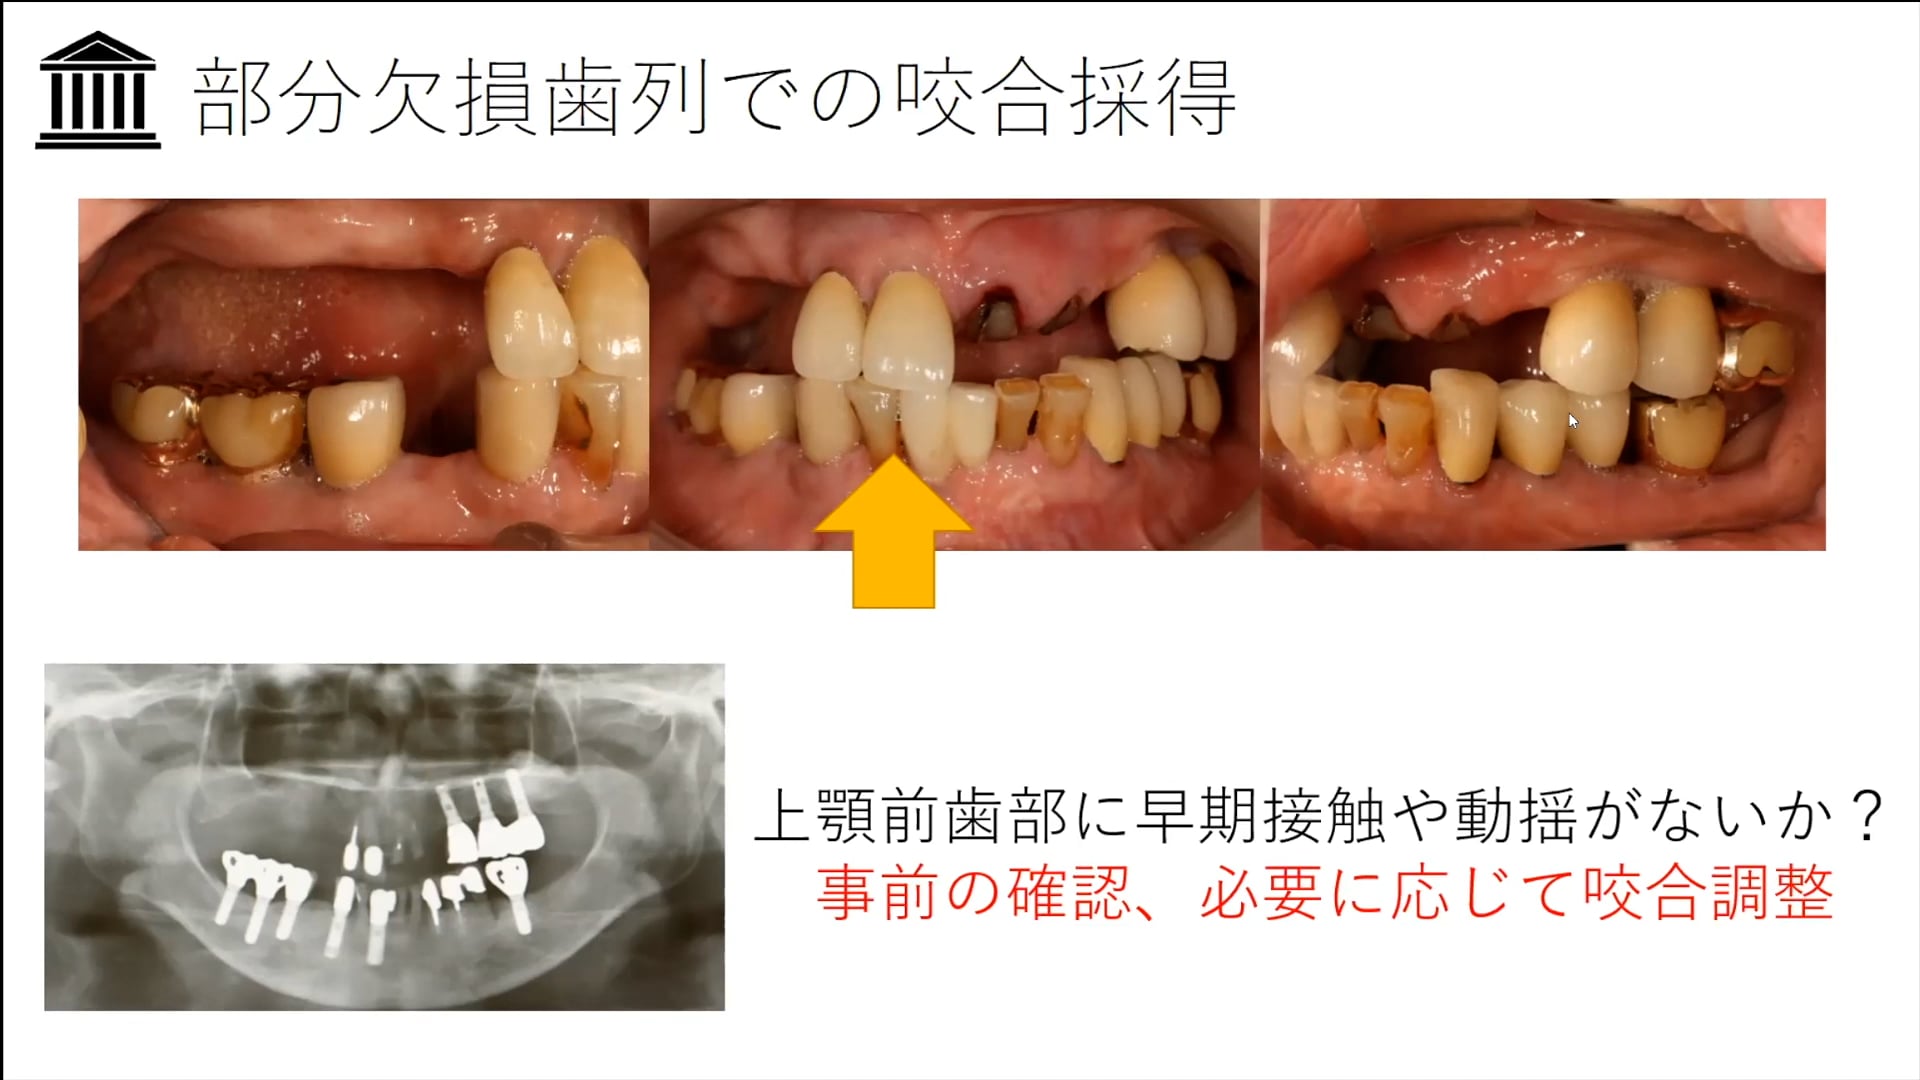 #2「咬合床を応用した部分欠損歯列の咬合採得」荻野 洋一郎先生